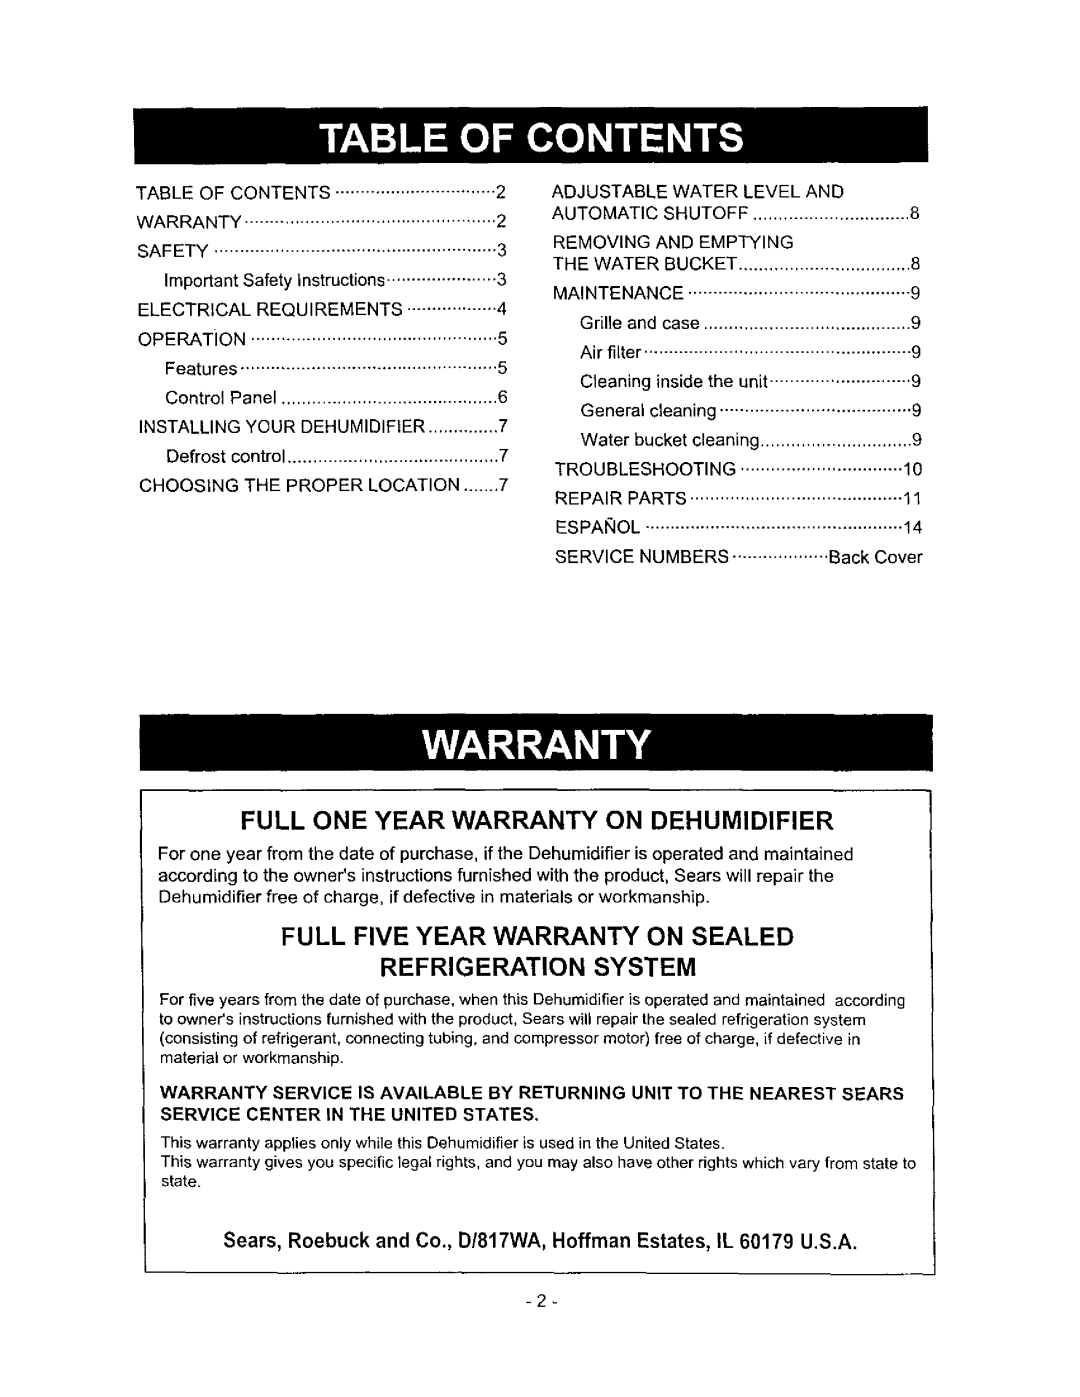 Kenmore 580.513 Full One Year Warranty On Dehumidifier, Refrigeration System, Full Five Year Warranty On Sealed 